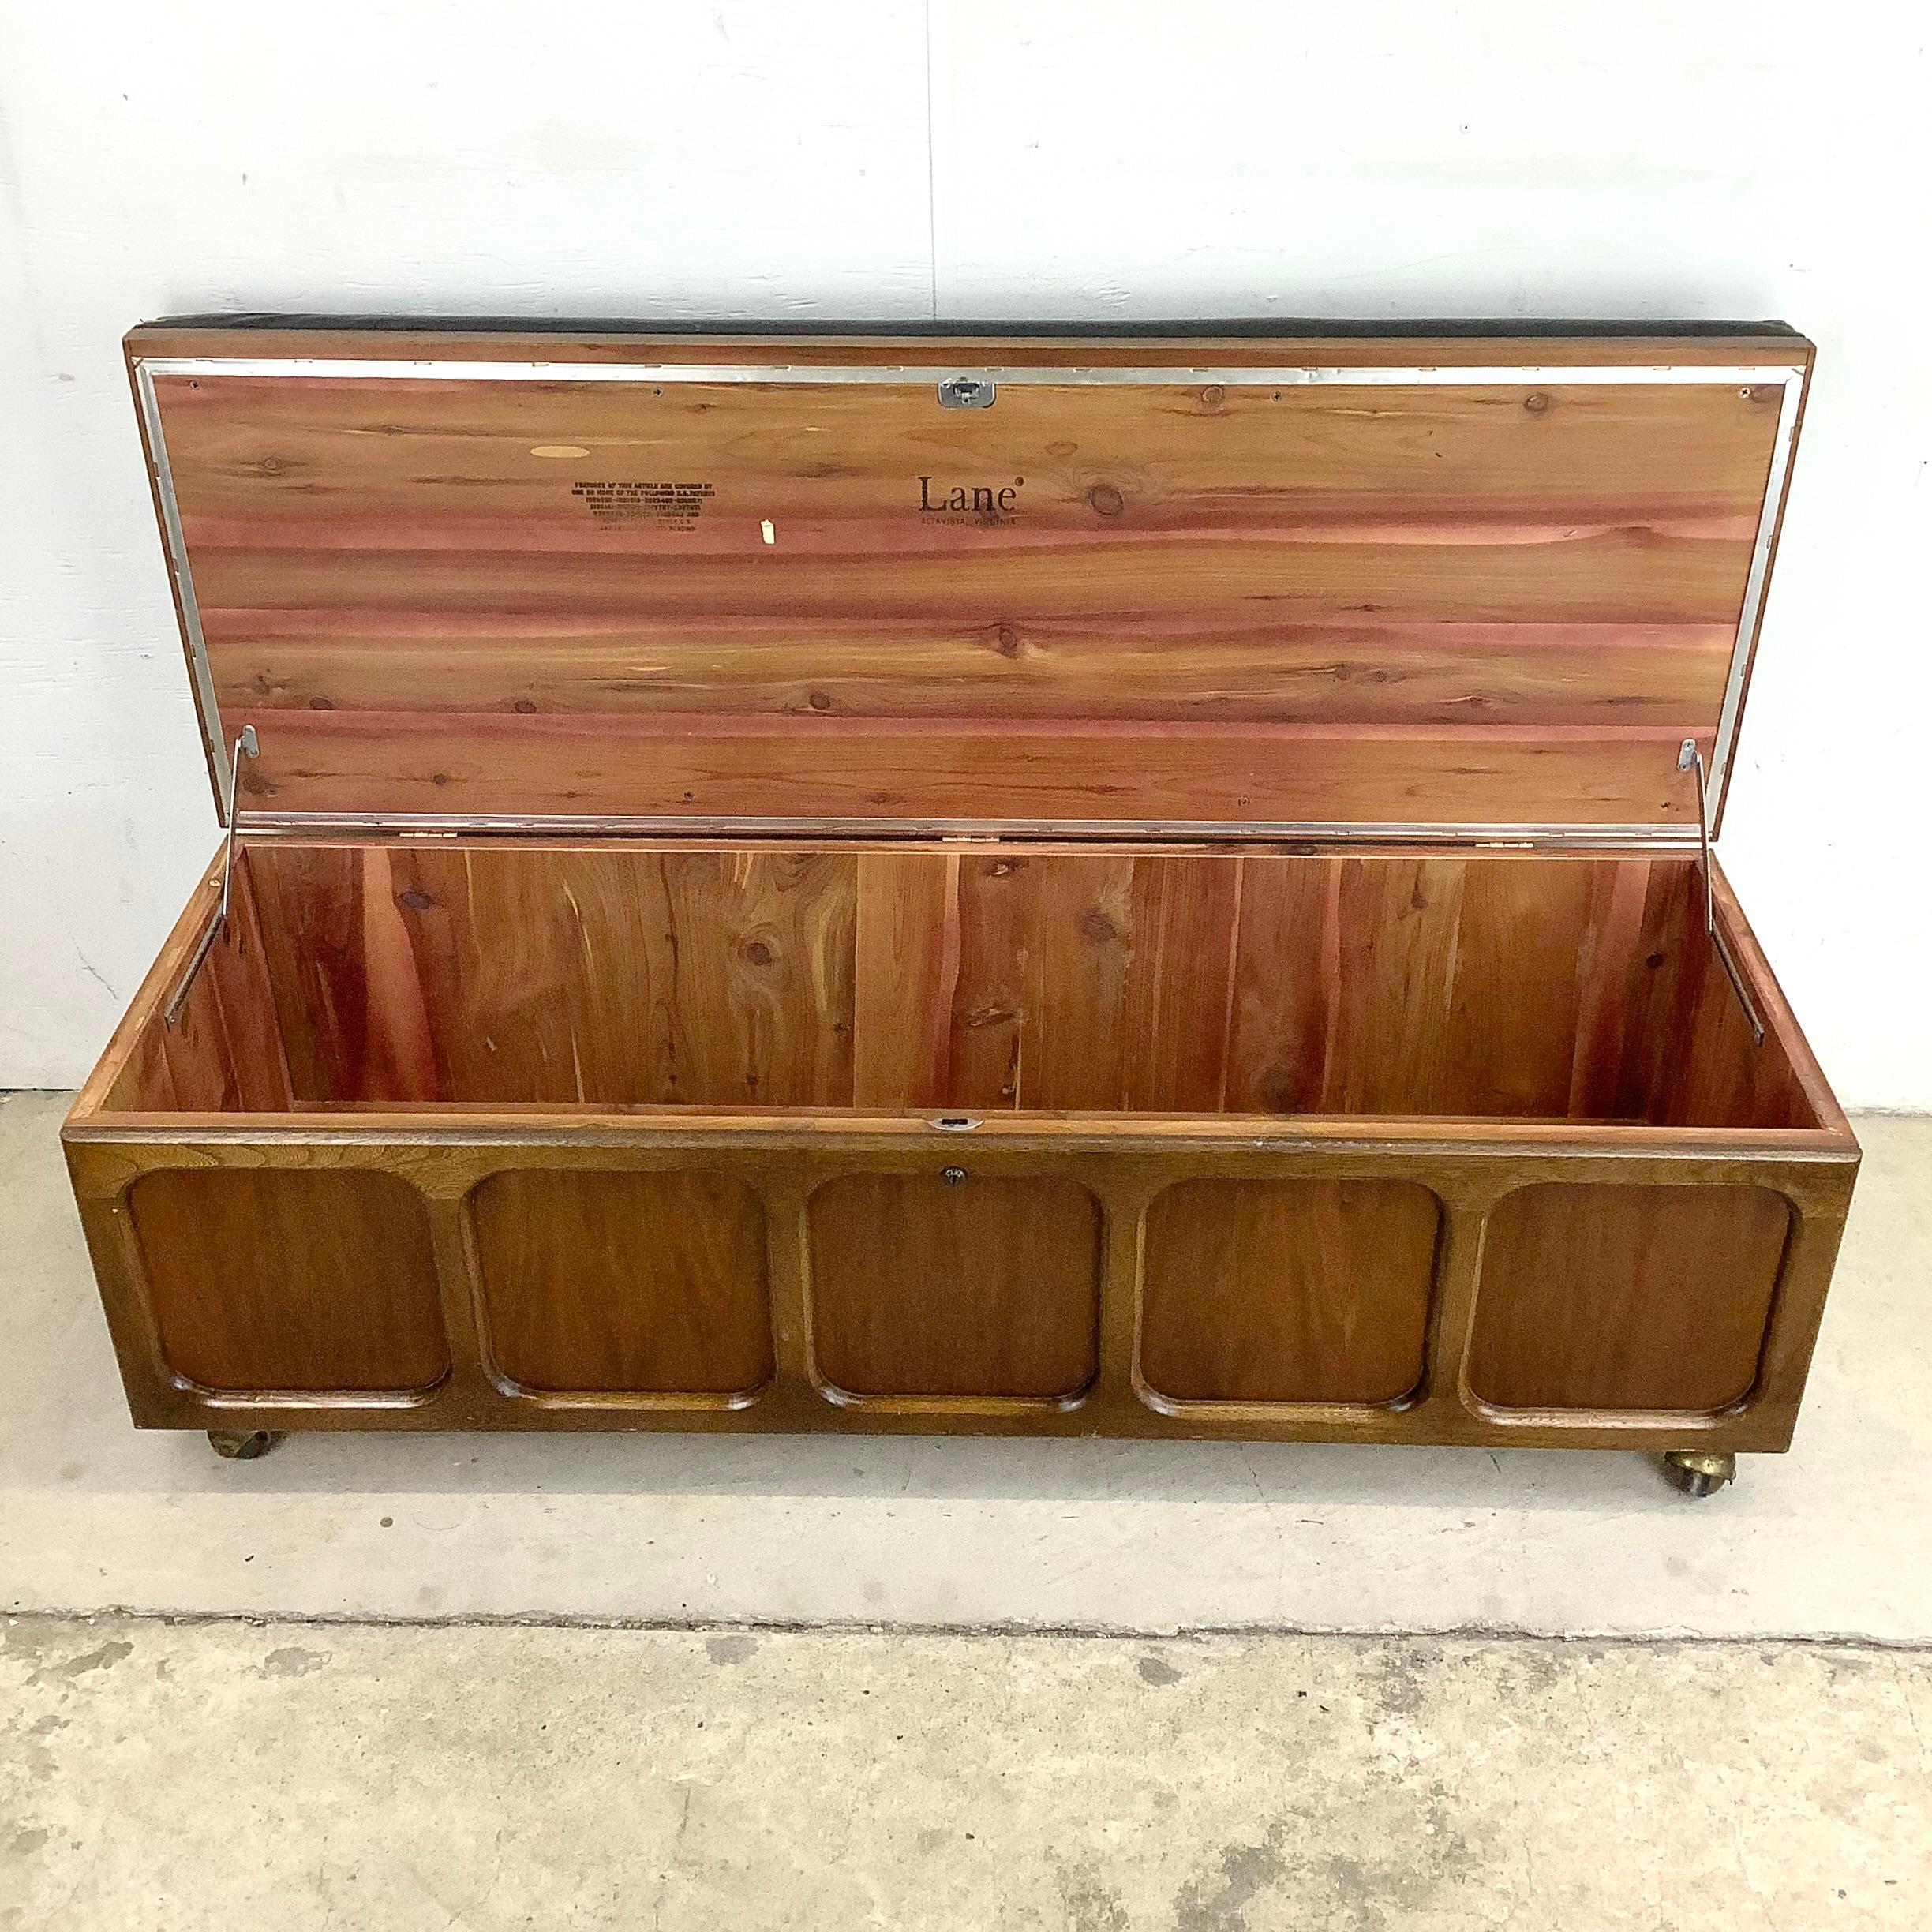 20th Century Midcentury Cedar Storage Bench from Lane Furniture